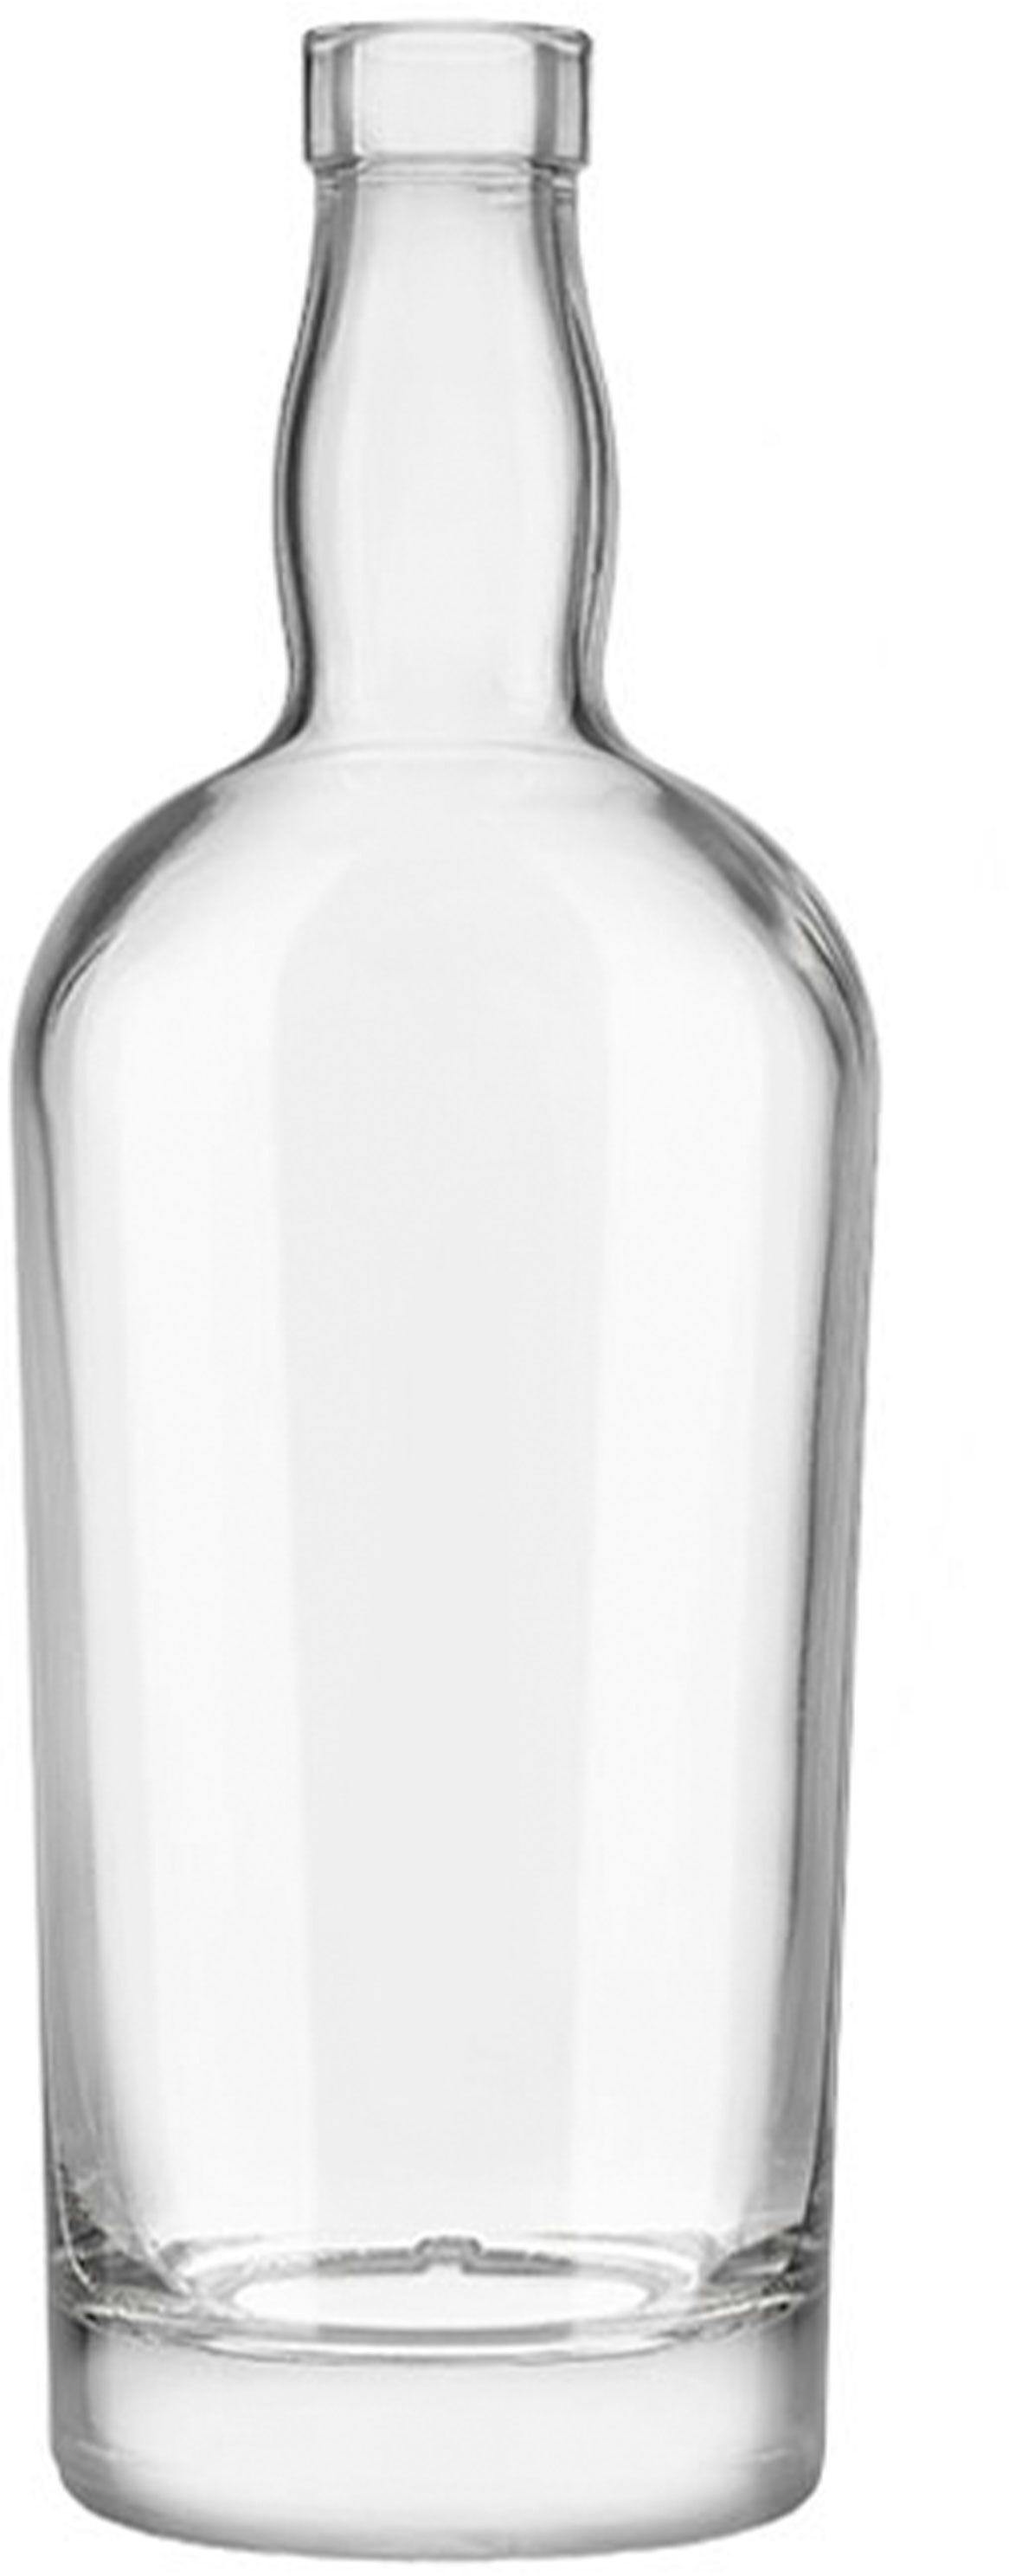 Flasche HERMITAGE  700 ml BG-Korken